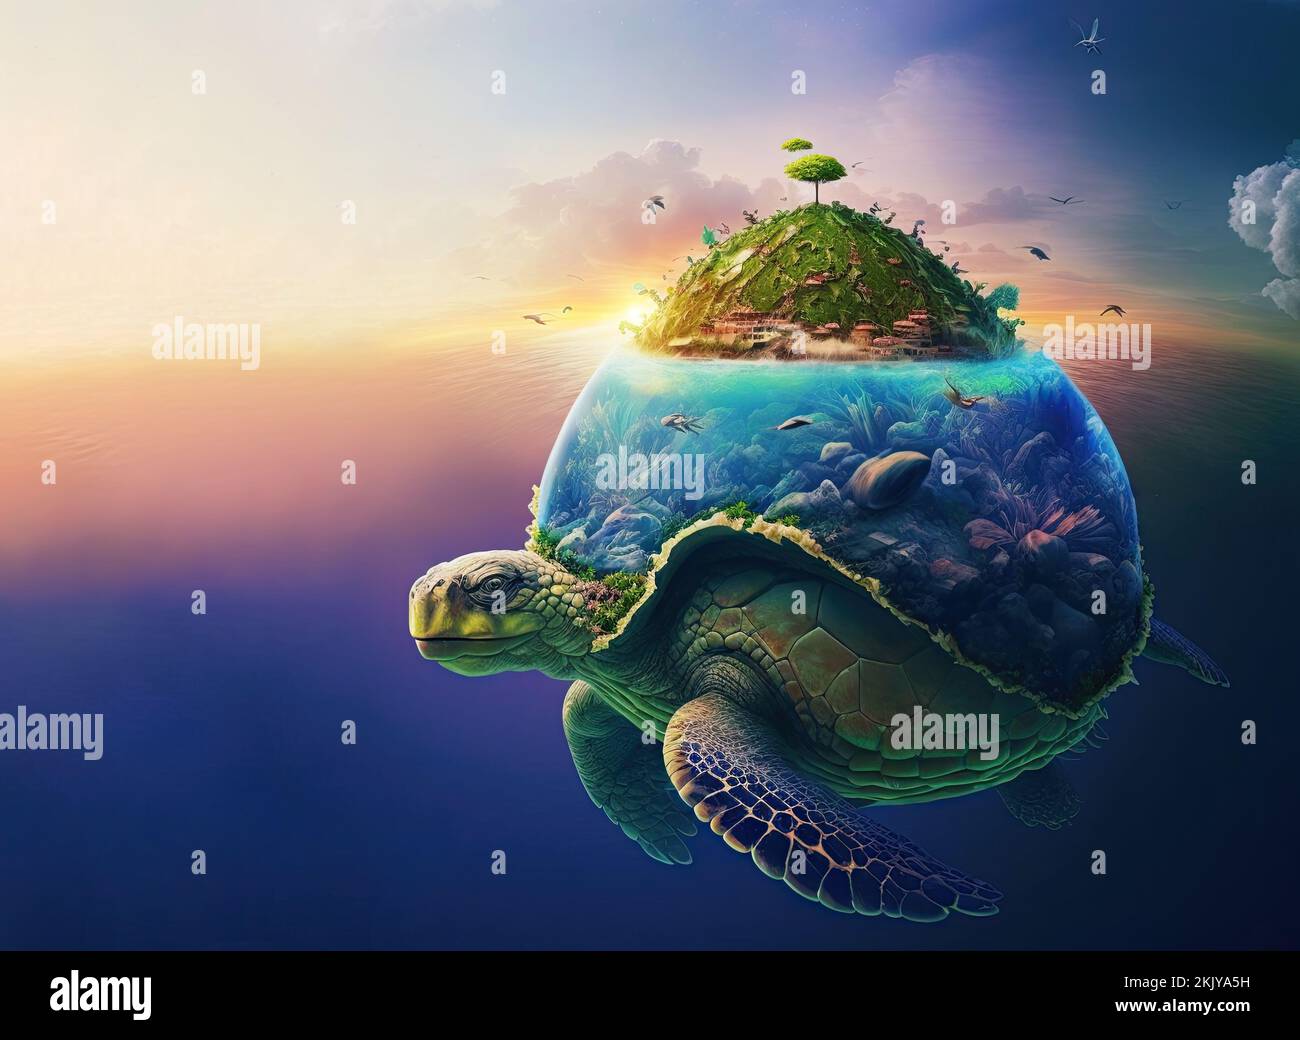 Tropische Insel mit Palmen und einem Paradiesstrand, schwimmend im Meer, hergestellt auf der Muschel einer riesigen grünen Schildkröte, die unter Wasser schwimmt. Hintergrund Stockfoto